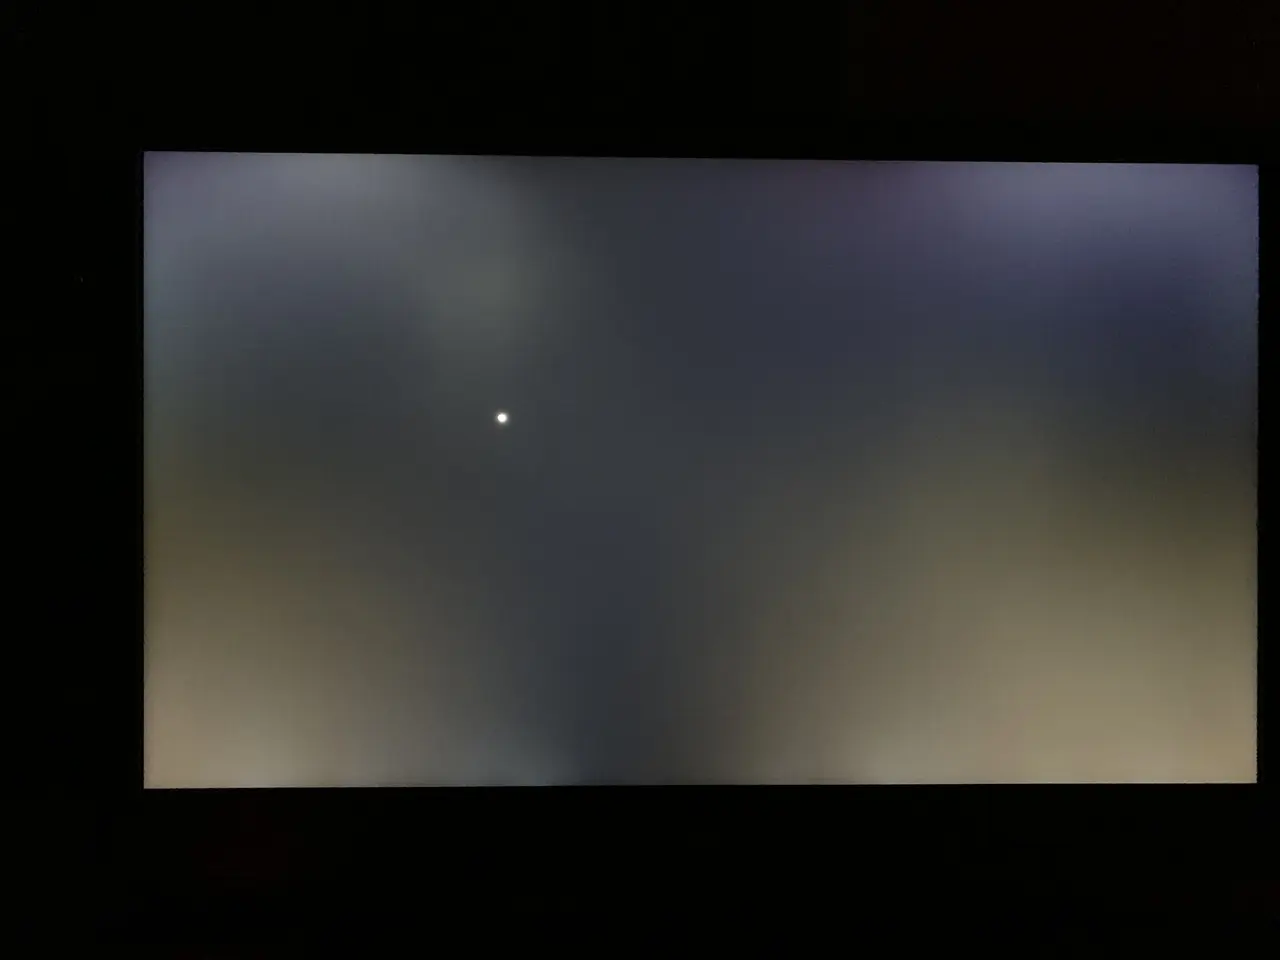 fuga de luz pantalla laptop - Cómo saber si mi laptop tiene fuga de luz